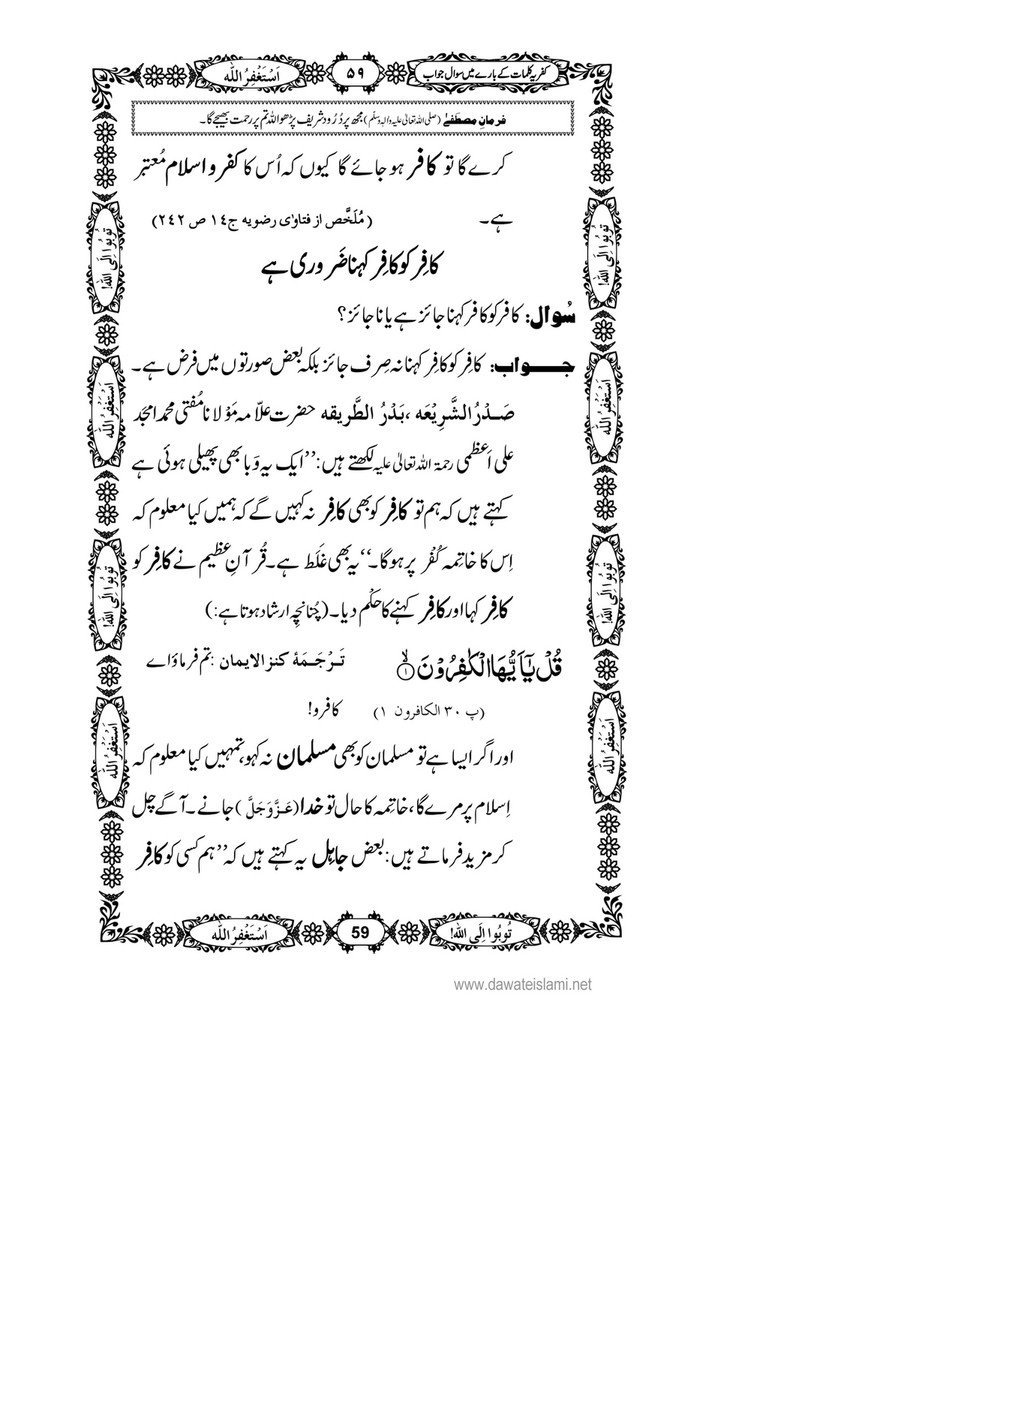 My Publications Kufriya Kalmaat Kay Baray Main Sawal Jawab Page 76 77 Created With Publitas Com